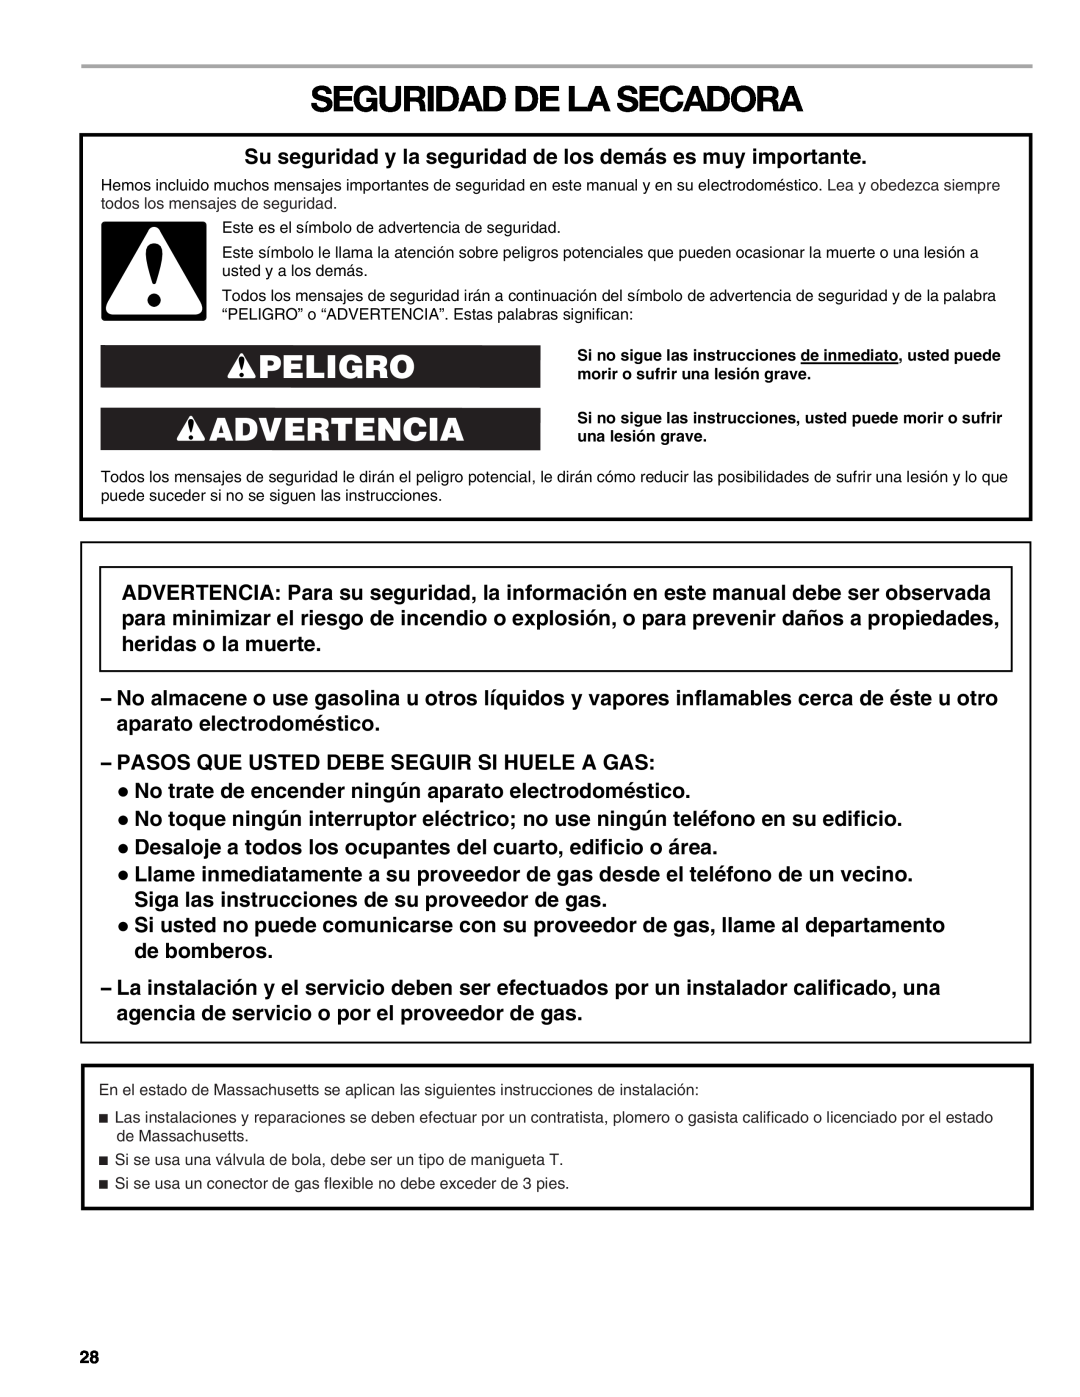 Sears 9709, 110.9708 manual Seguridad De La Secadora, Peligro Advertencia 